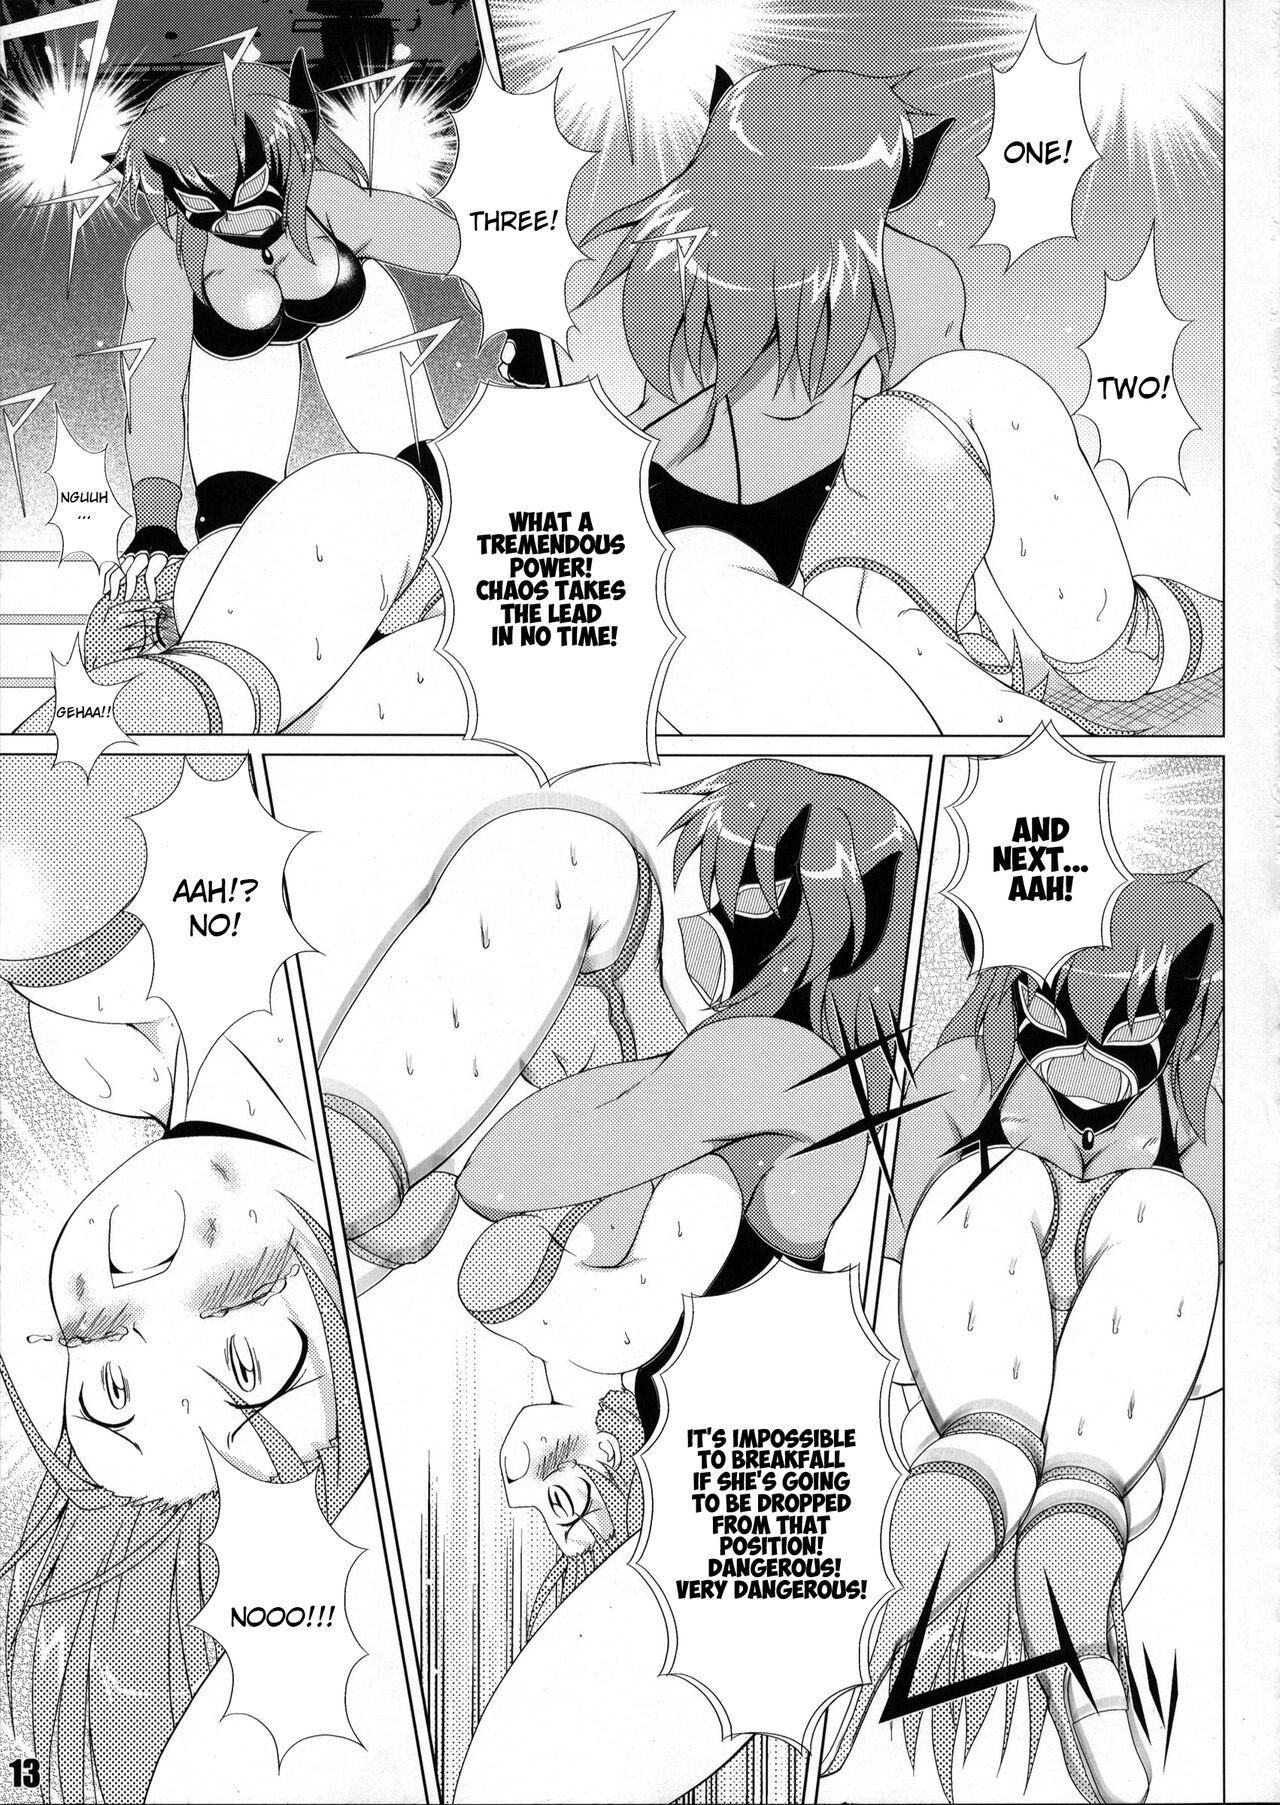 Soapy Massage (COMIC1☆6) [Soket=Pocket (Soket)] Mighty Yukiko vs Dark Star Chaos (FALLIN' ANGELS4 (WRESTLE ANGELS)) - Wrestle angels Girlnextdoor - Page 9